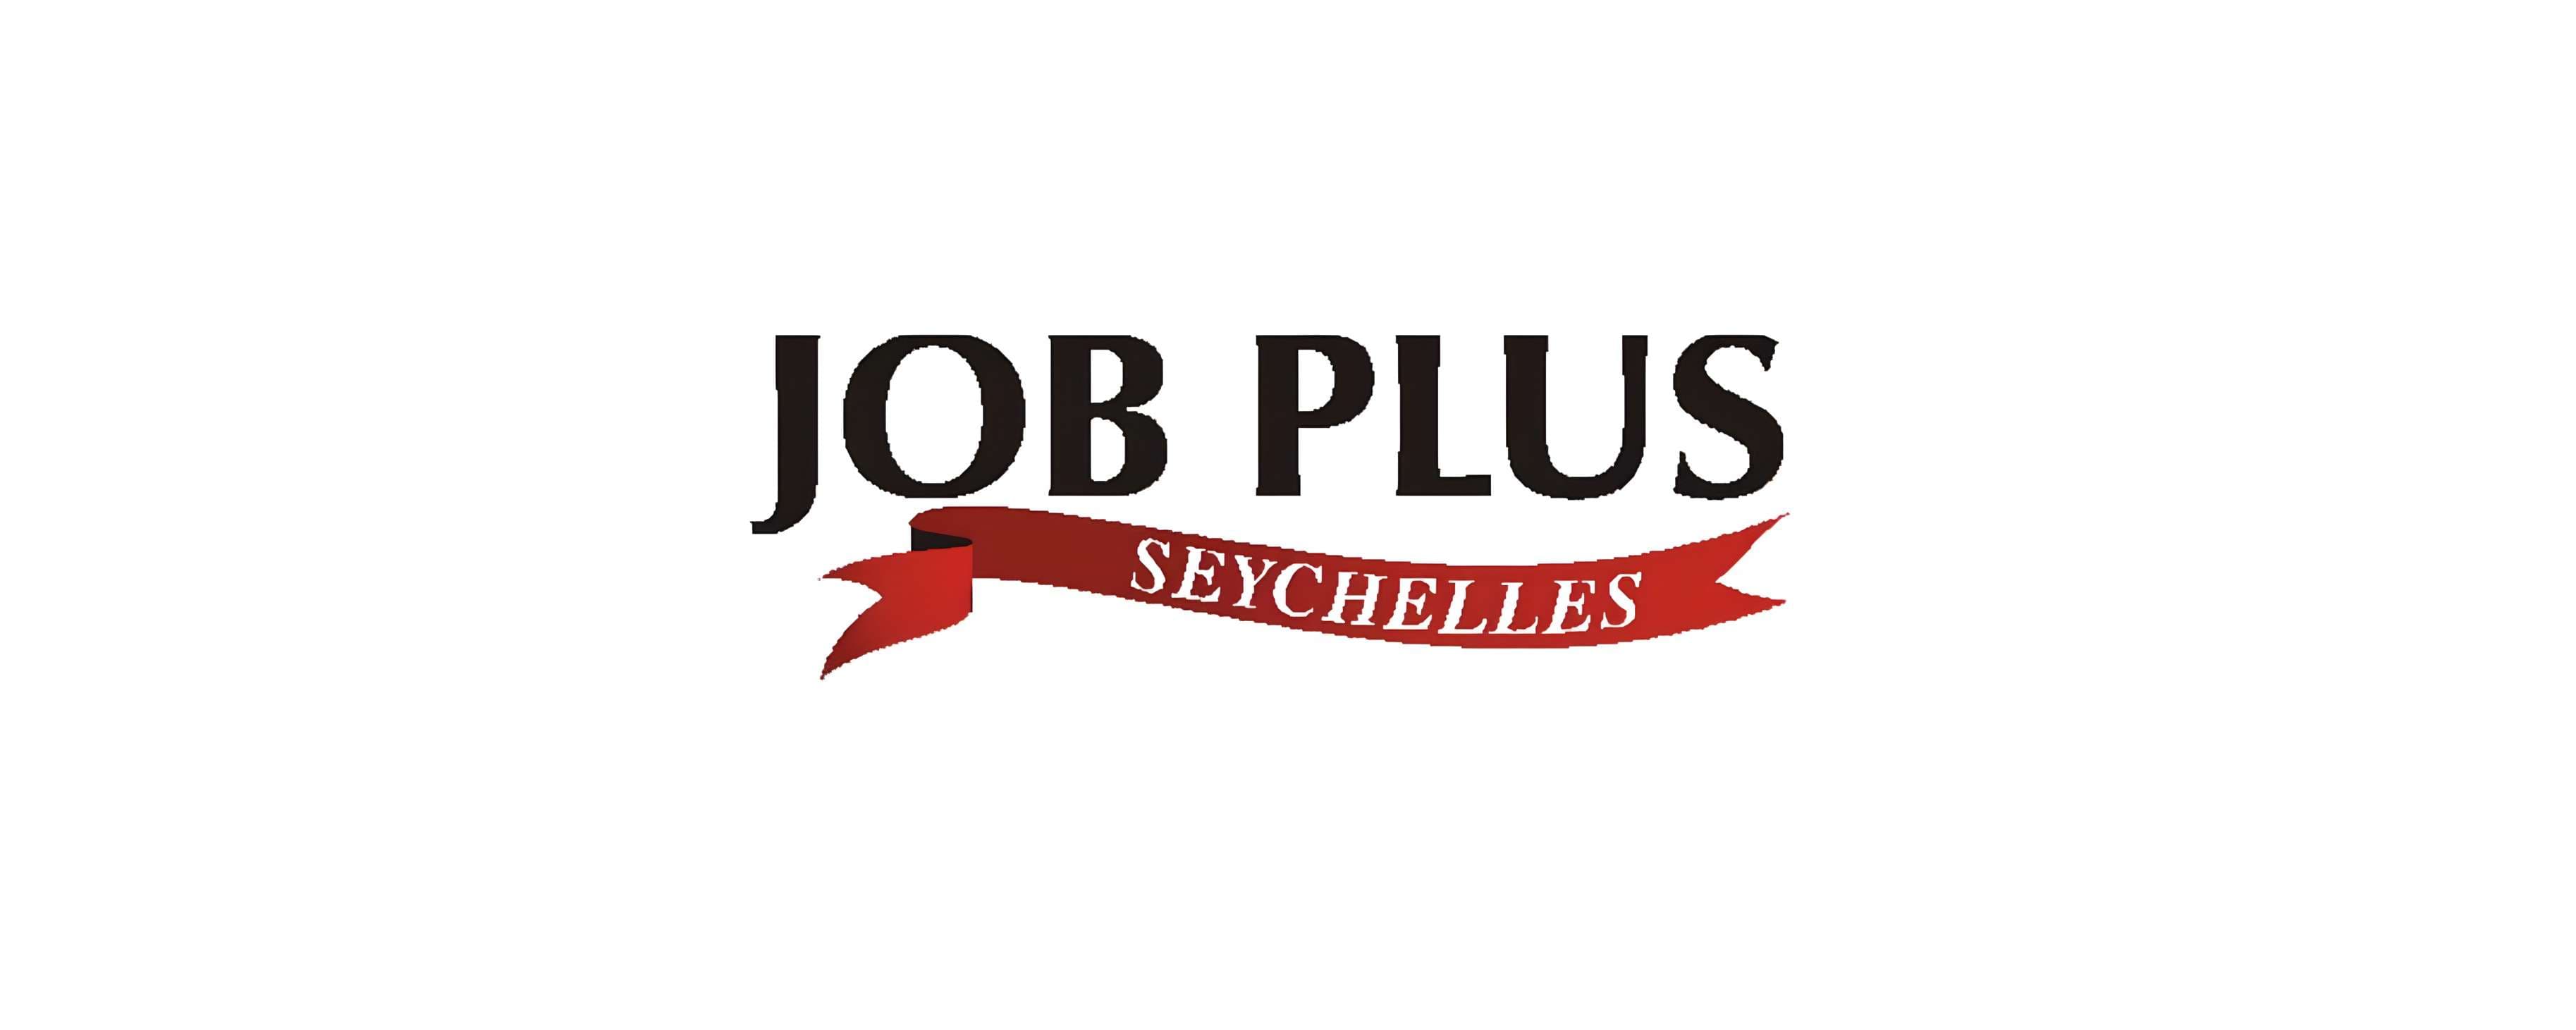 Job Plus Seychelles